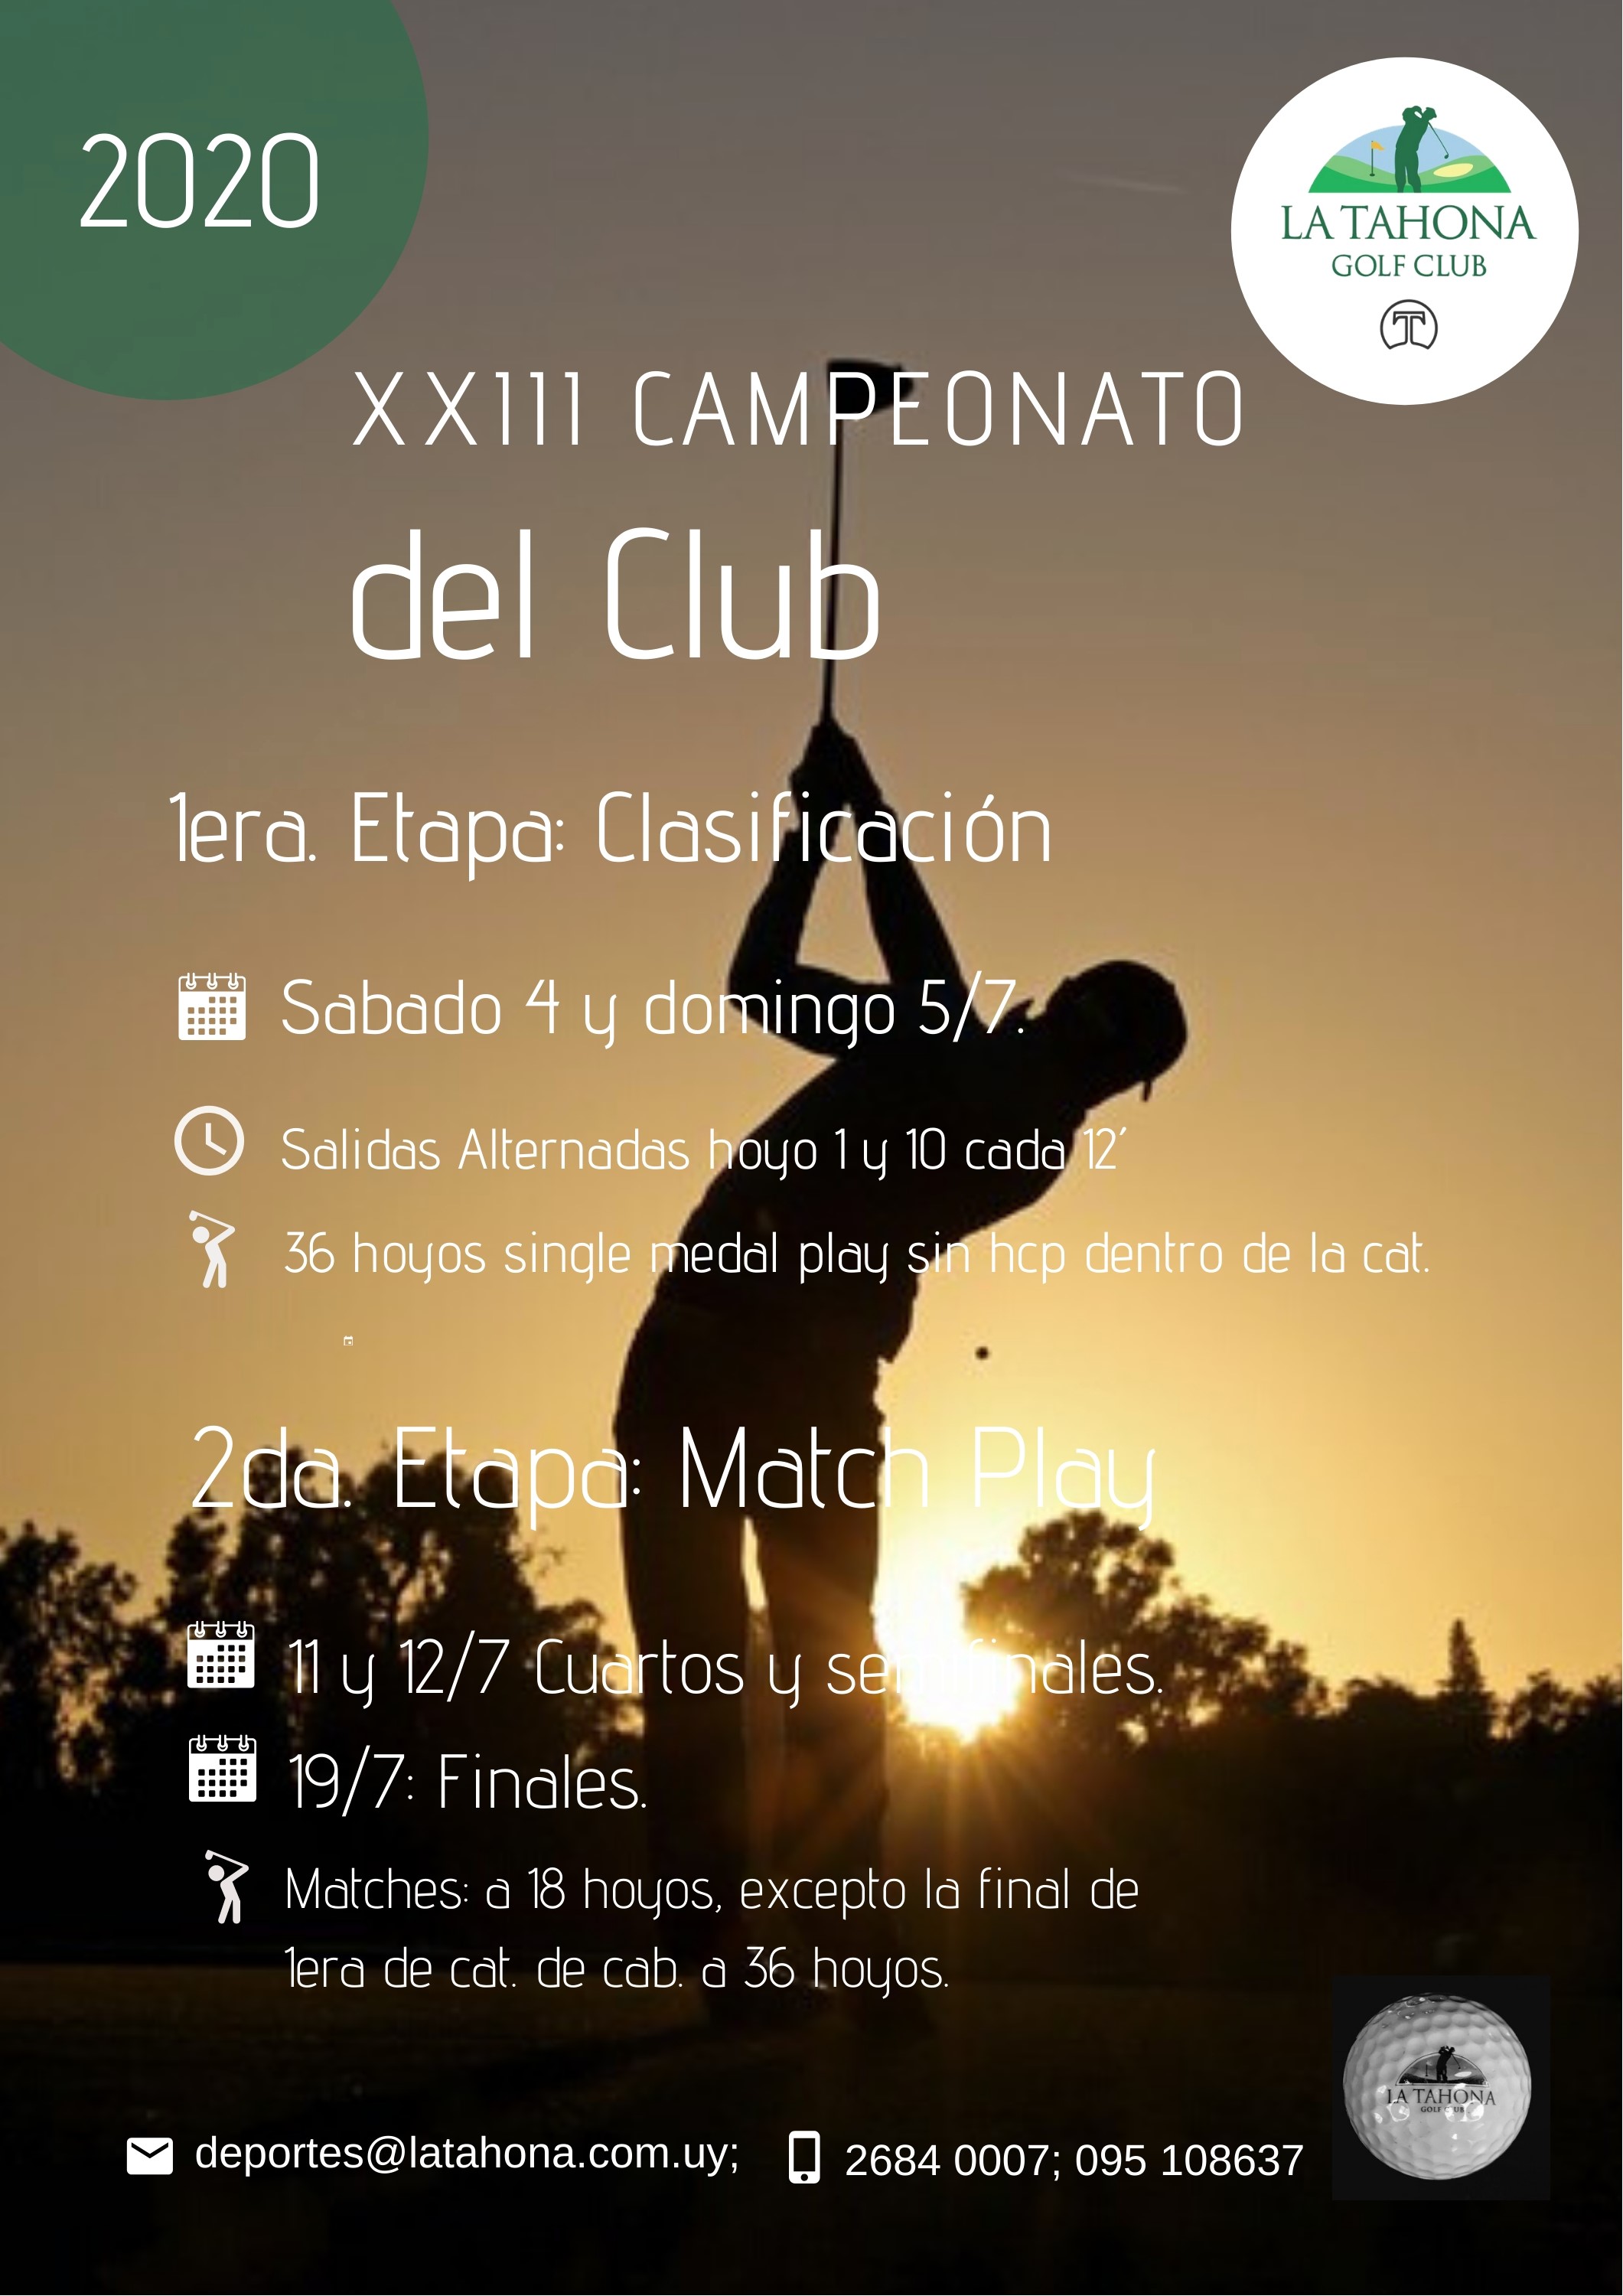 Campeonato del Club 2020 - Clasificacin 4 y 5/7